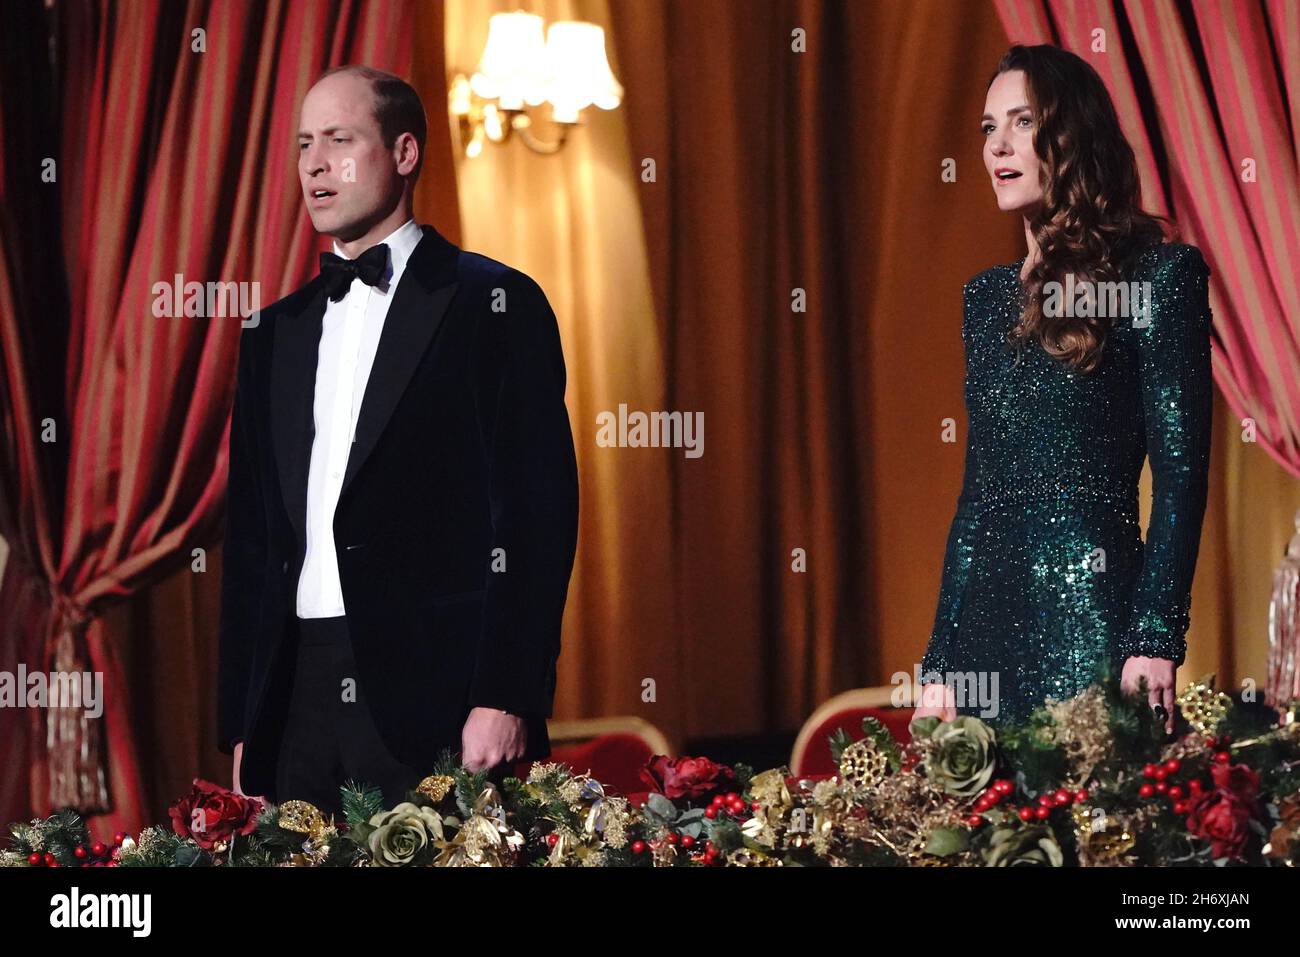 Le duc et la duchesse de Cambridge chantent l'hymne national lors de la Royal Variety Performance au Royal Albert Hall de Londres.Date de la photo: Jeudi 18 novembre 2021. Banque D'Images